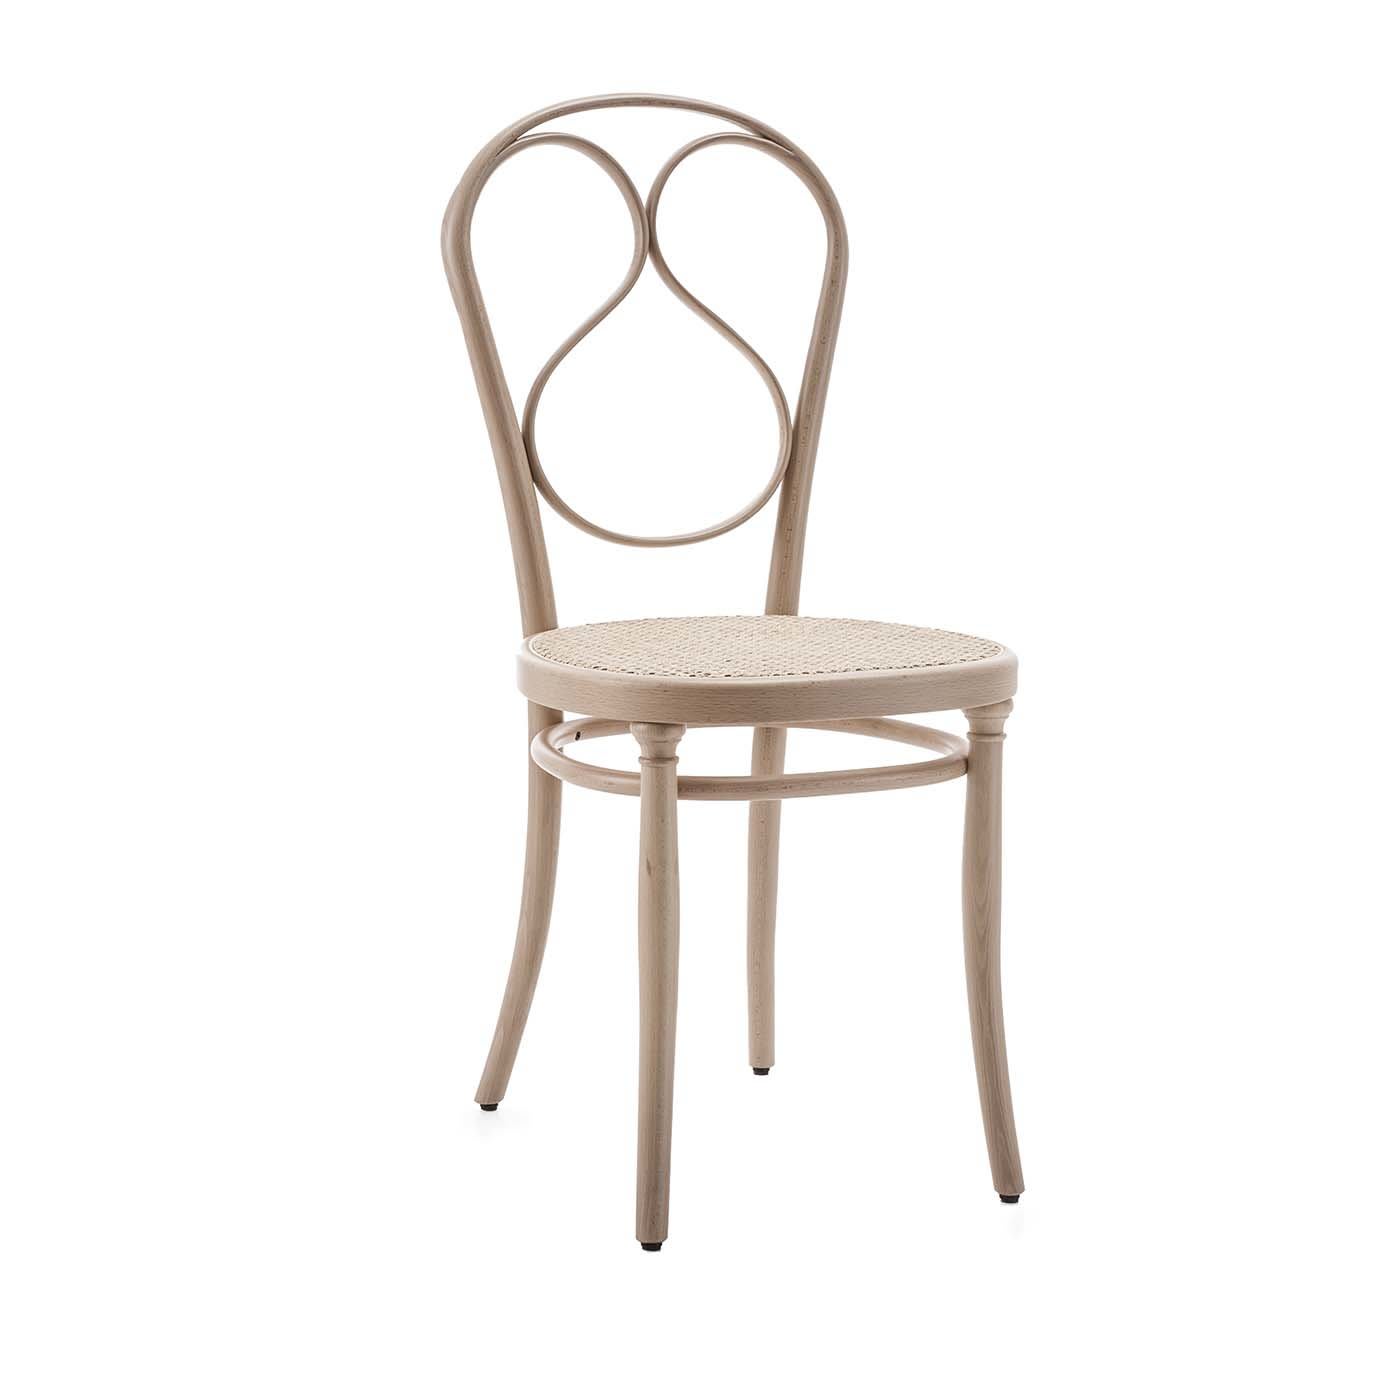 N.1 Natural Chair - Gebrüder Thonet Vienna GmbH (GTV) – Wiener GTV Design